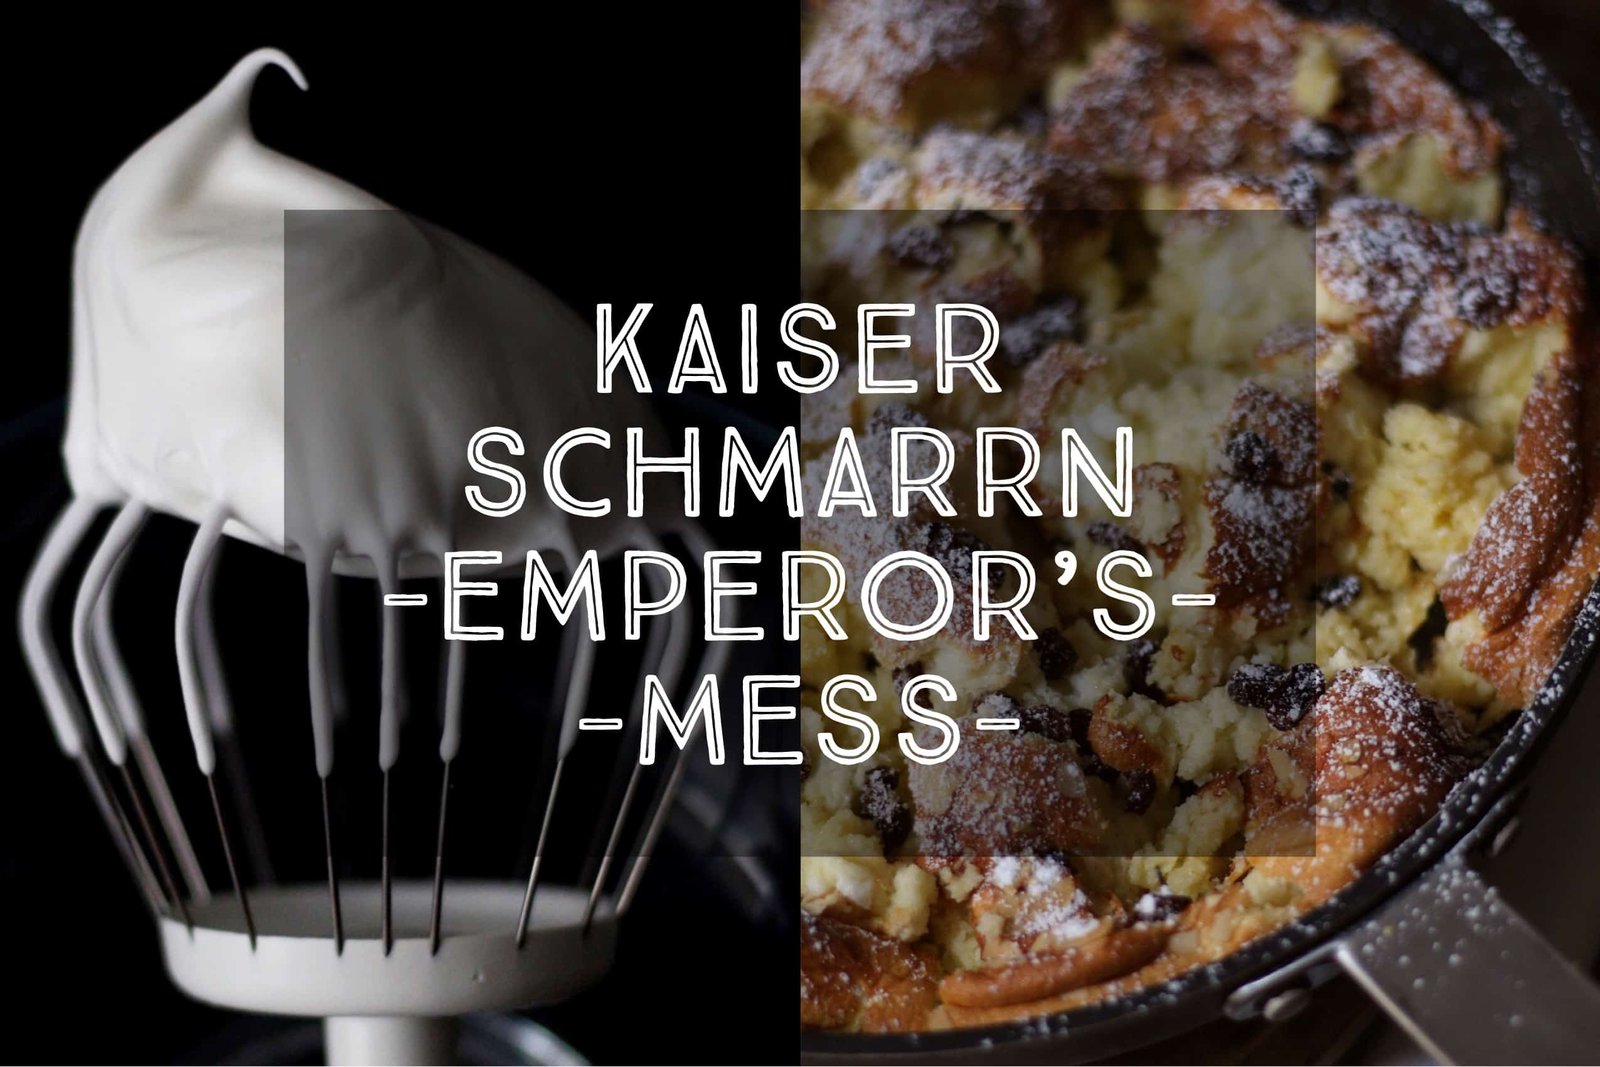 Kaiserschmarrn or ‘Emperor’s Mess’